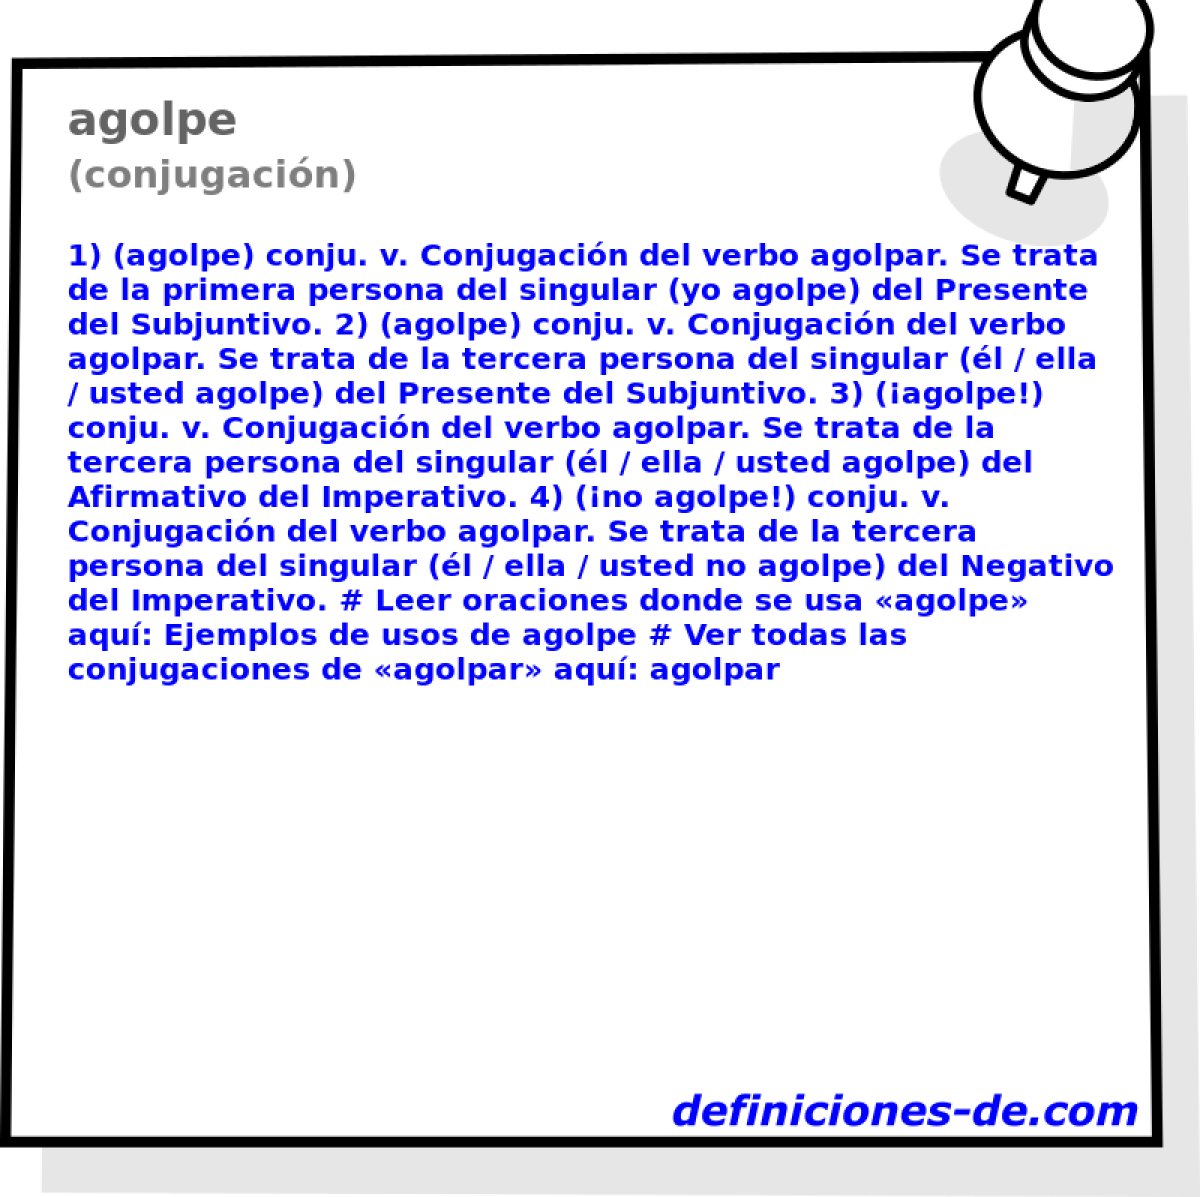 agolpe (conjugacin)